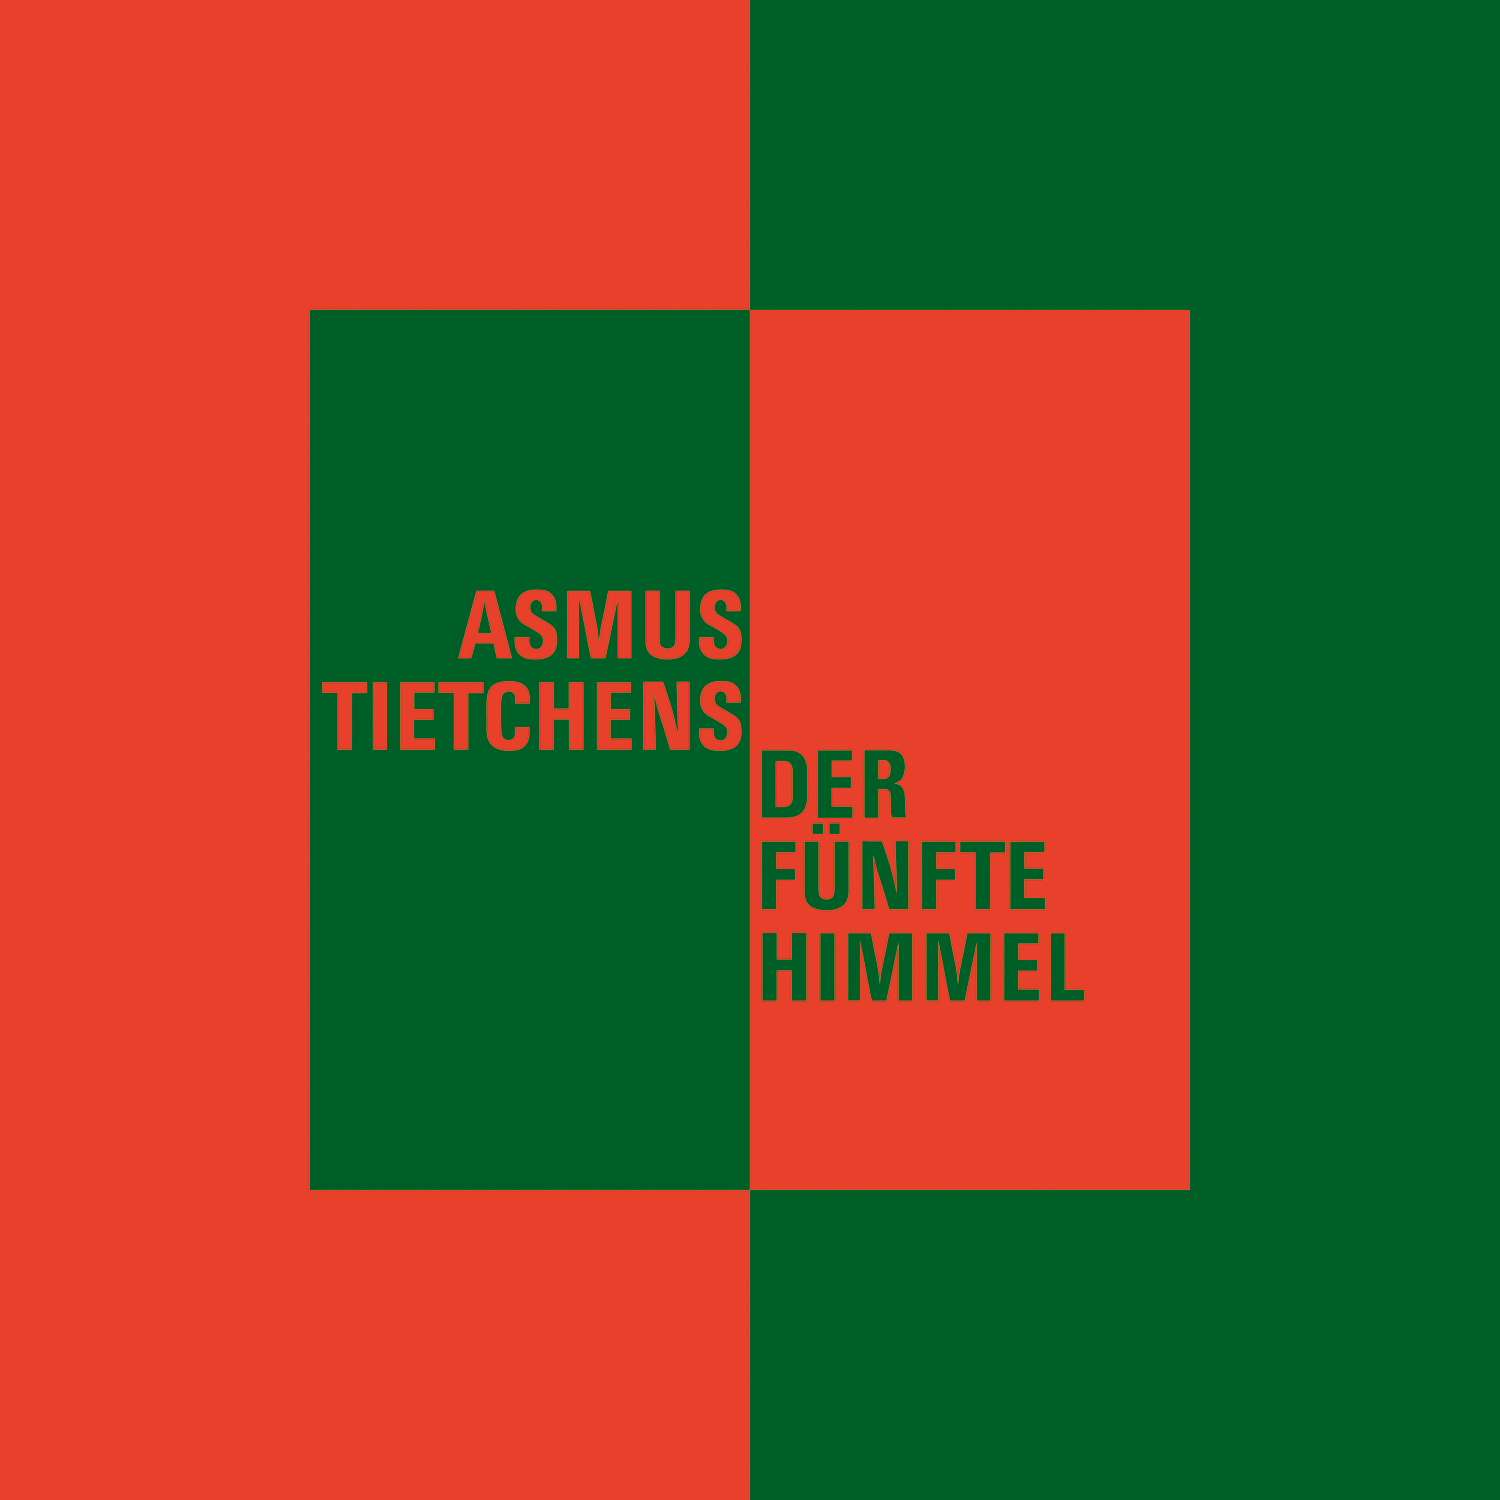 Asmus Tietchens - Der fünfte Himmel